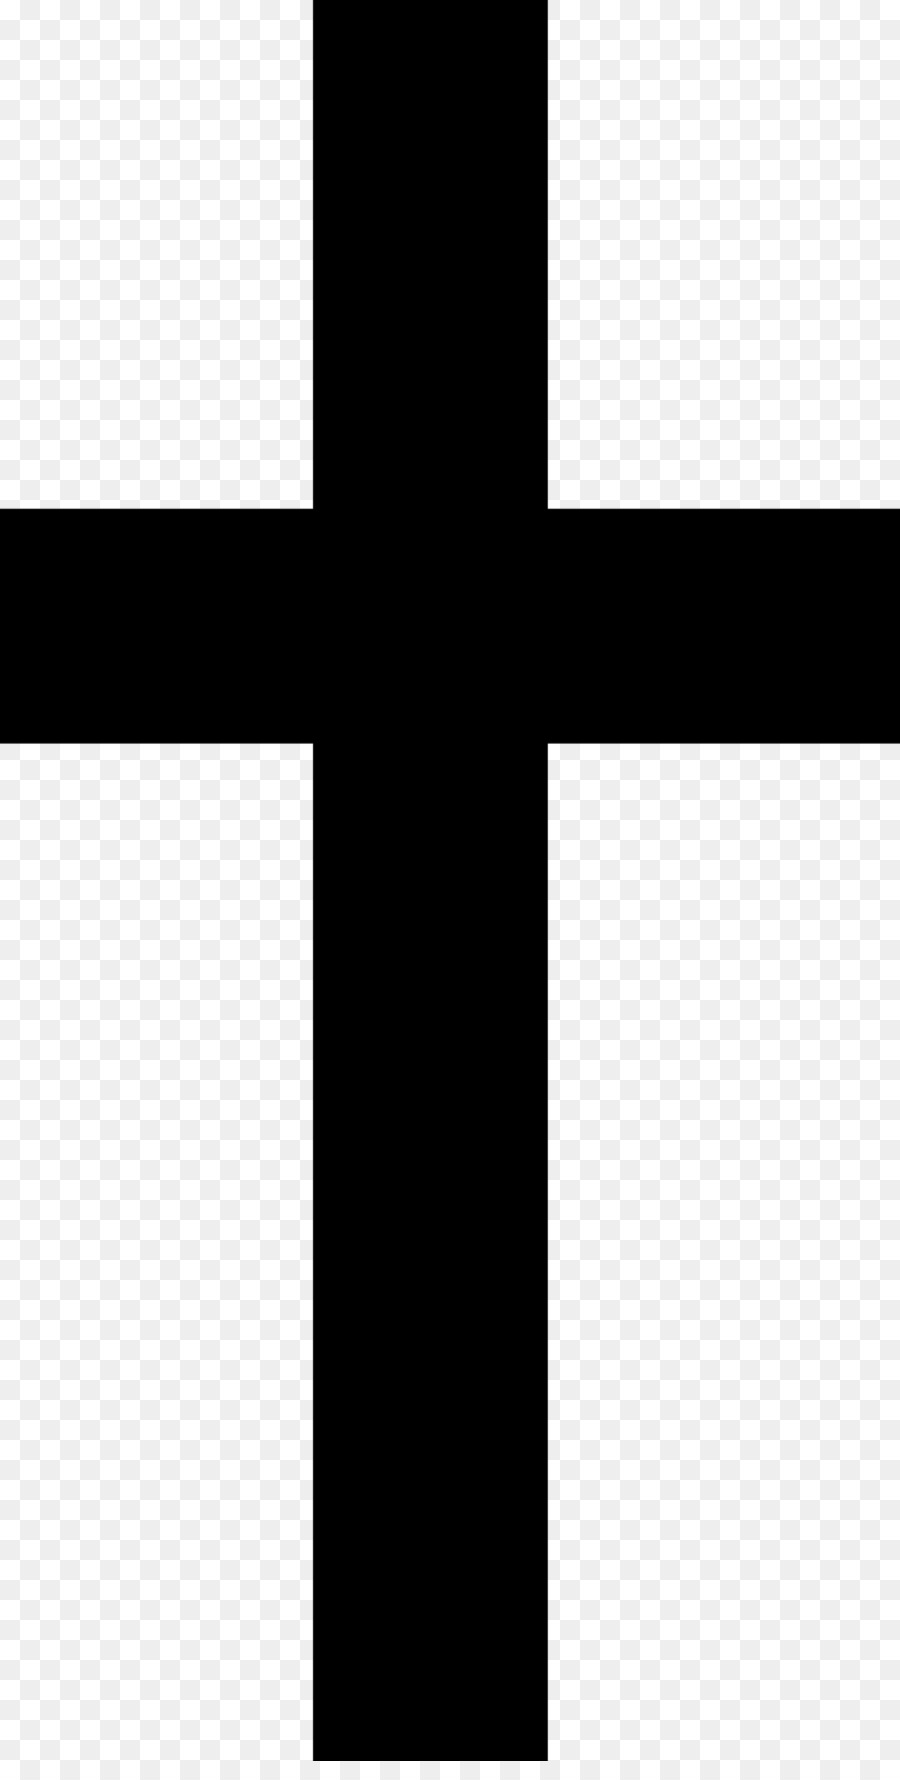 Christian cross Clip art - christian cross png download - 981*1920 - Free Transparent Christian Cross png Download.